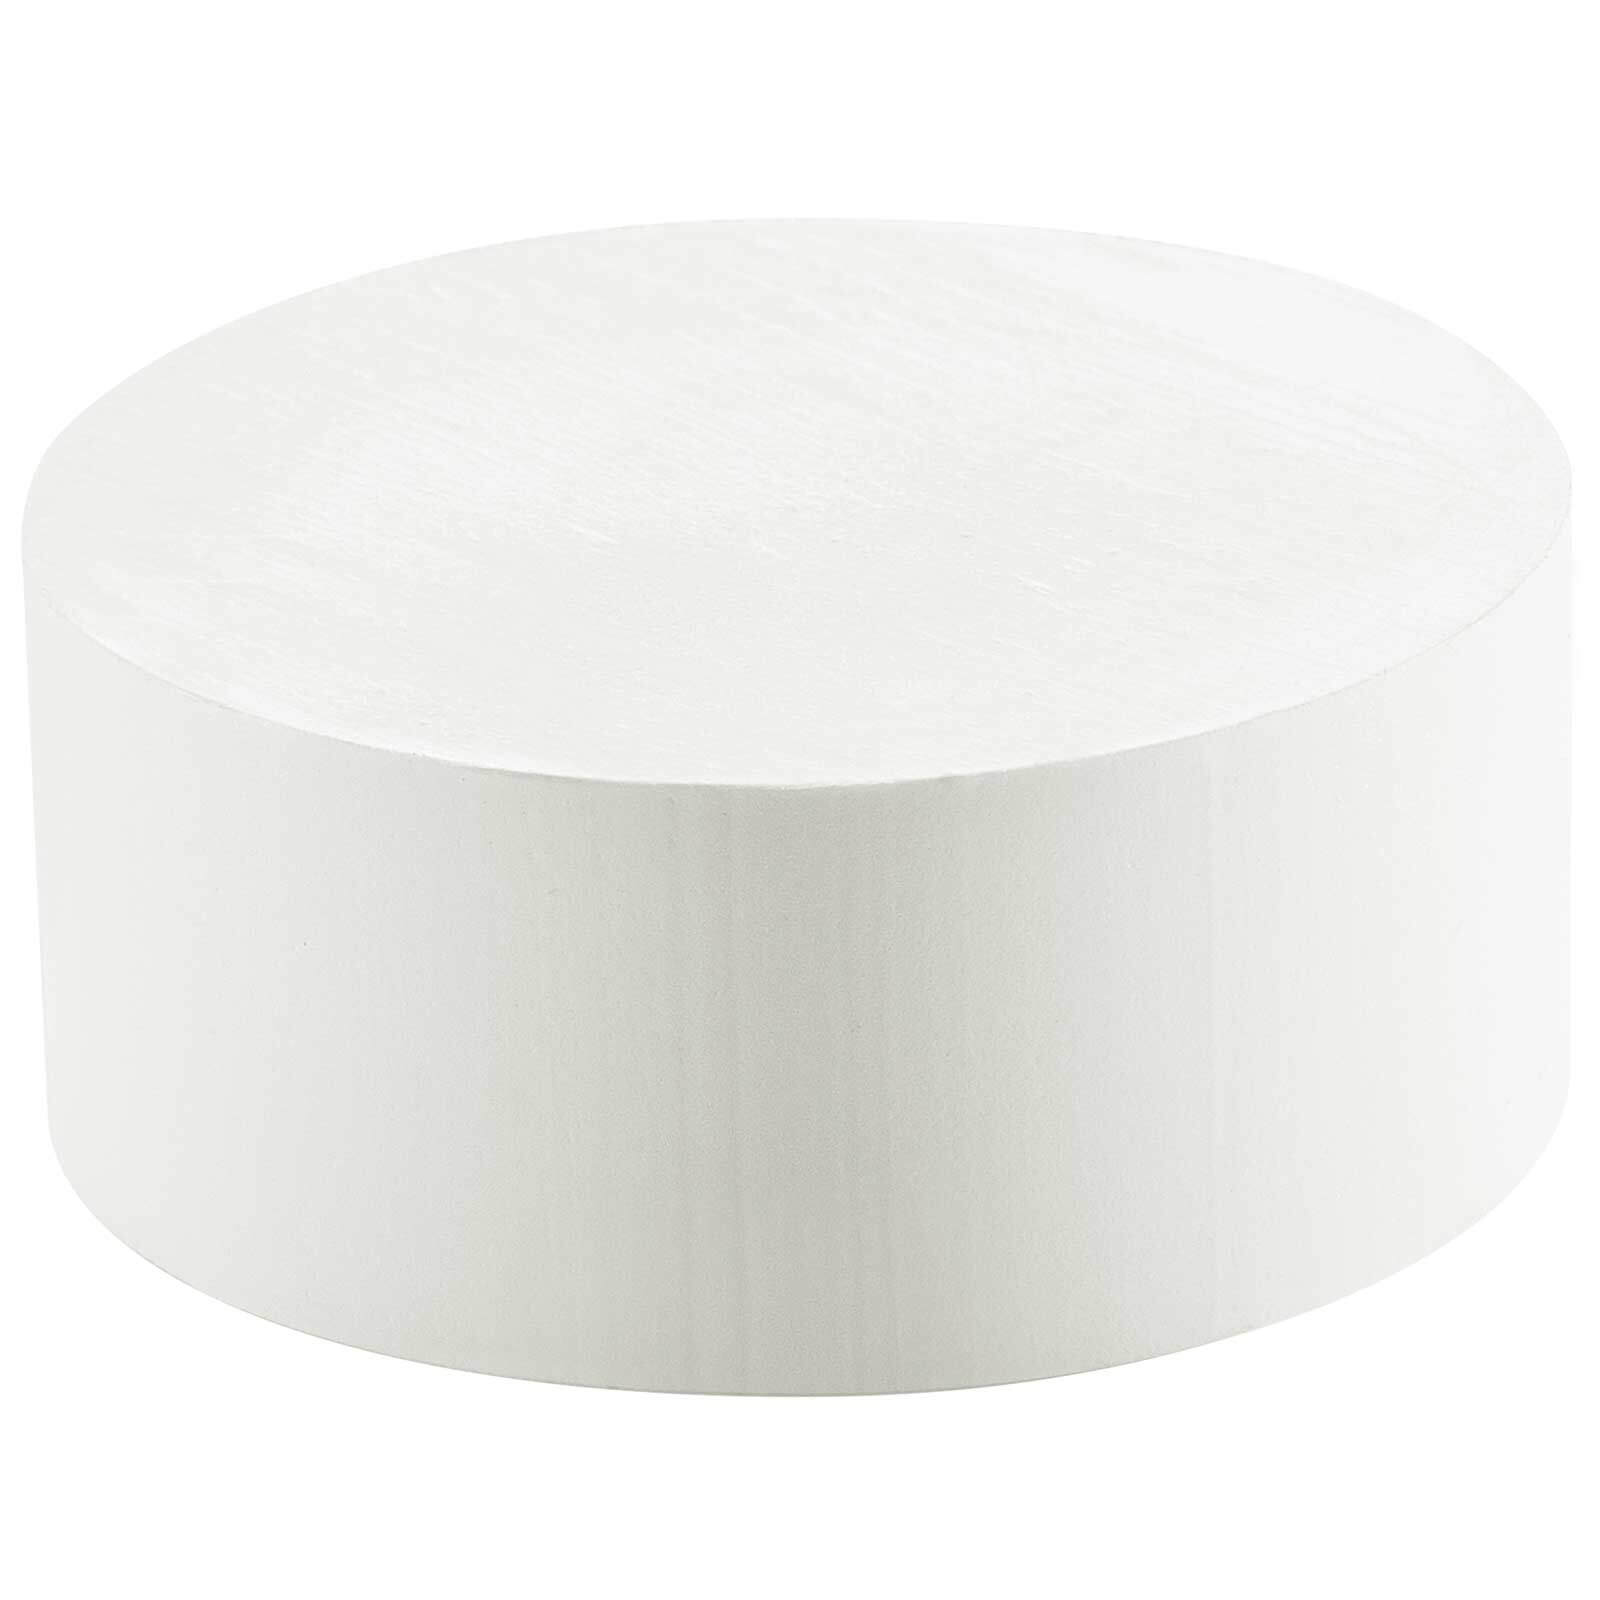 Image of Festool EVA Adhesive for KA 65 Edge Bander White Pack of 48